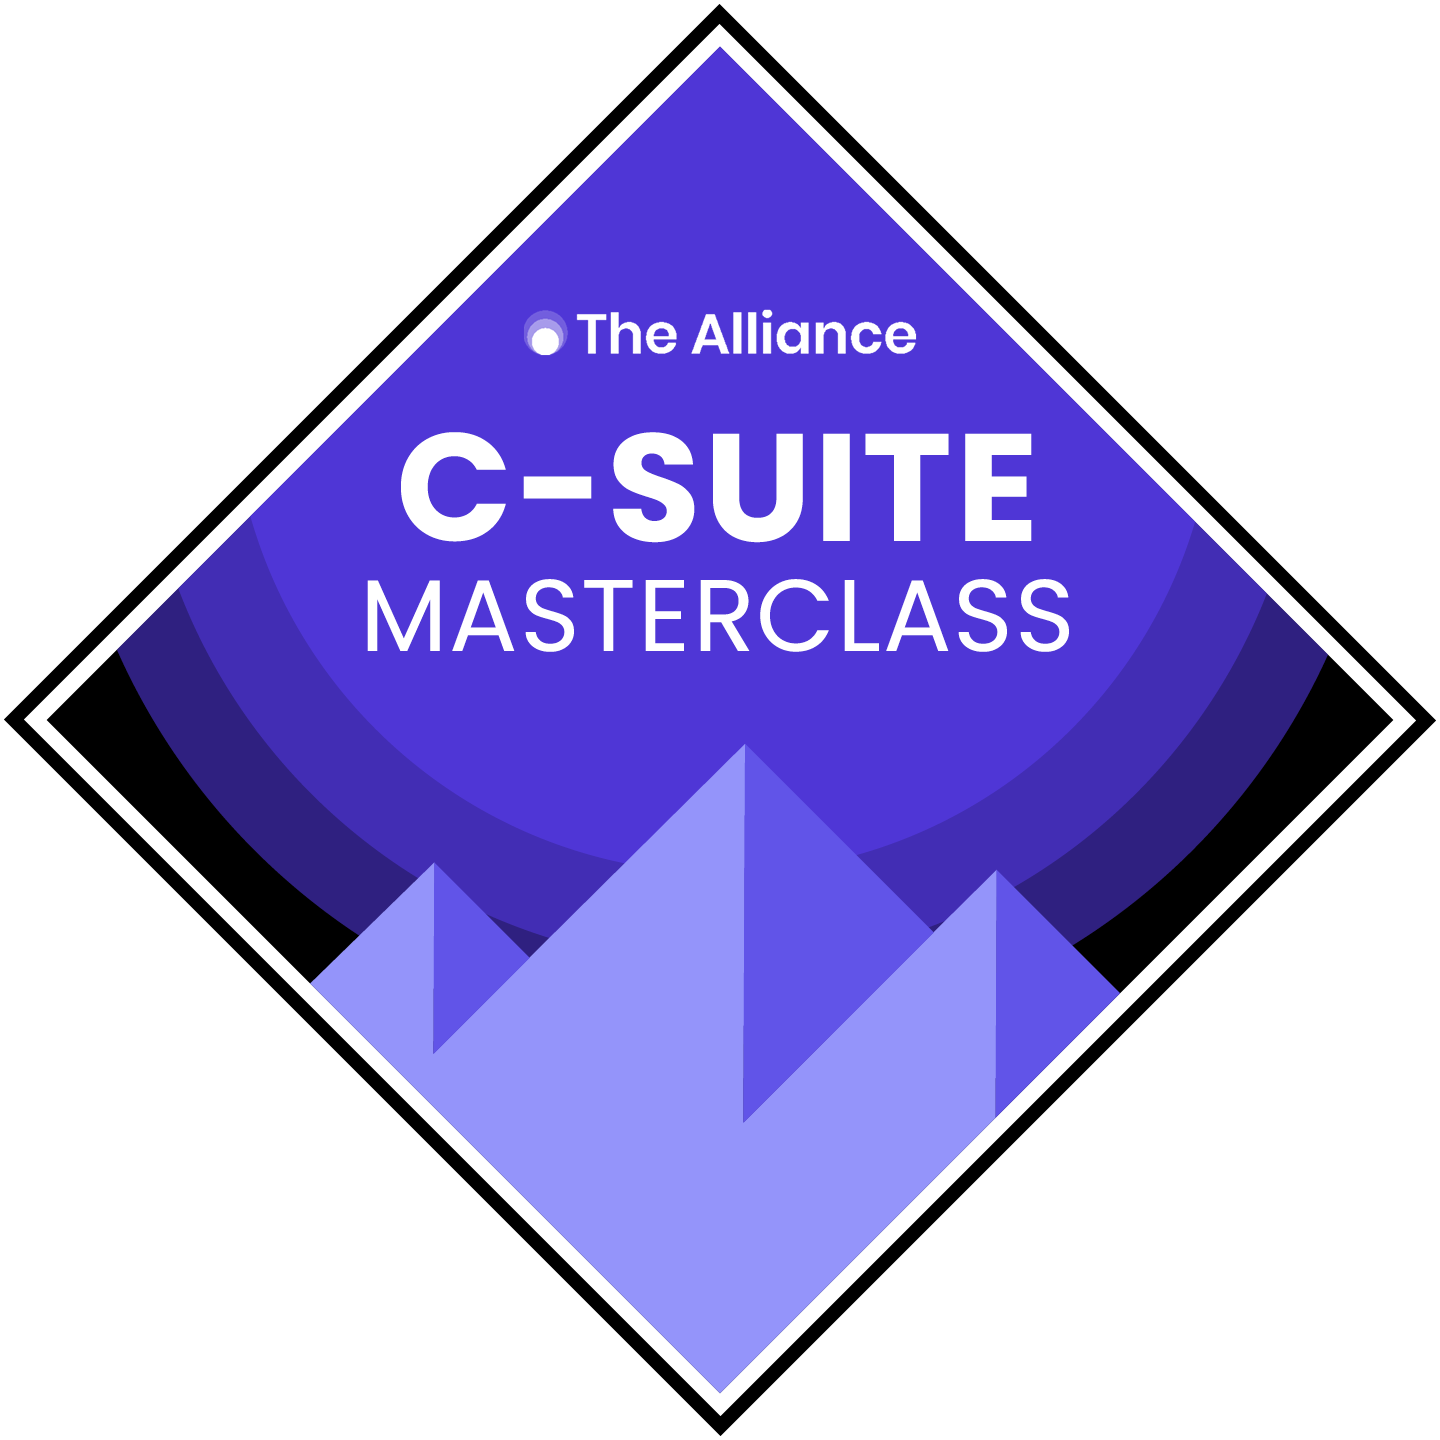 C-Suite Masterclass badge